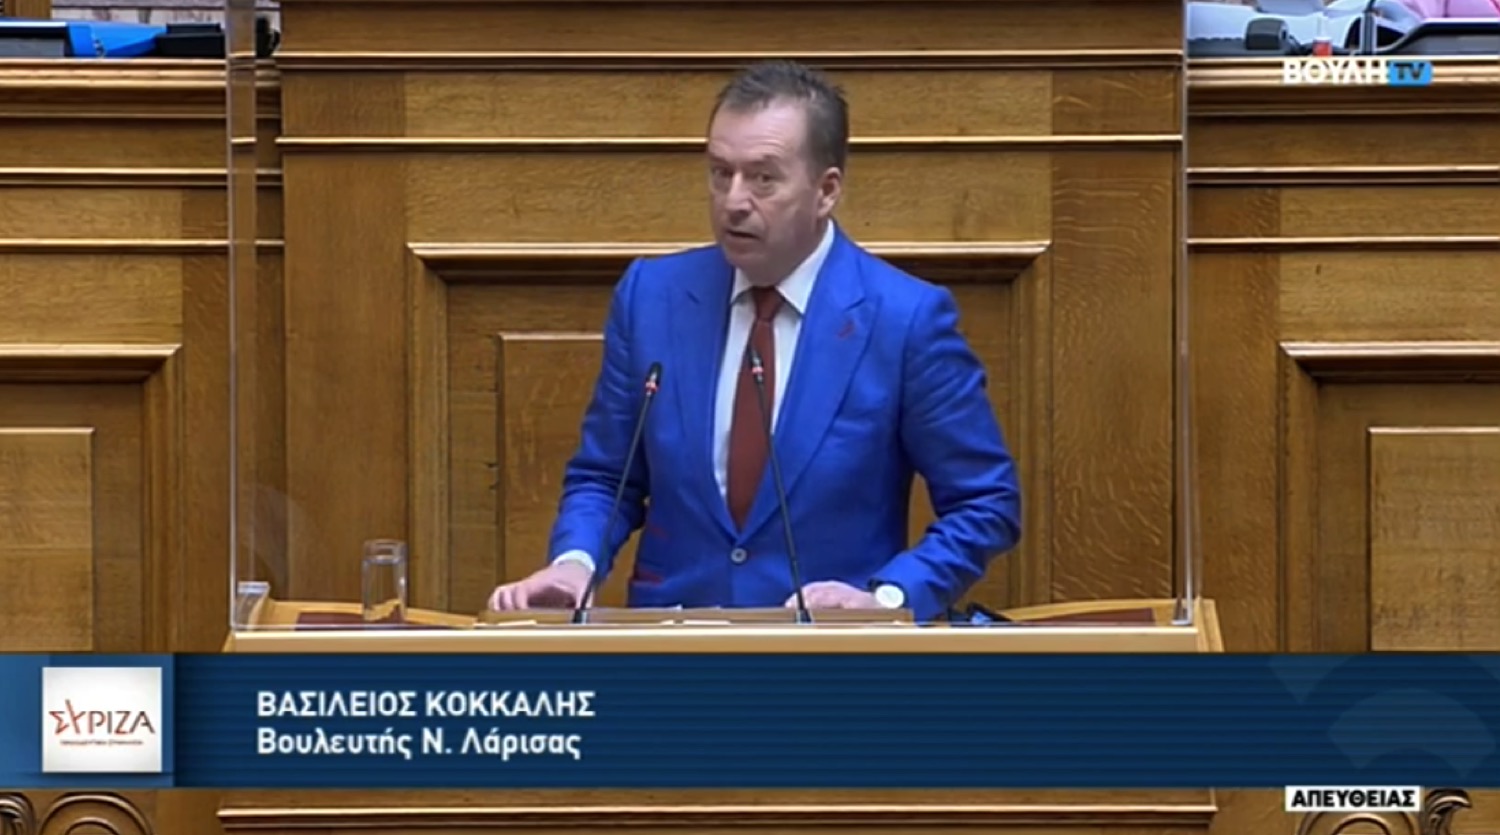 Κόκκαλης στη βουλή: Λέτε ψέματα στον Ελληνικό λαό για τη ρήτρα αναπροσαρμογής